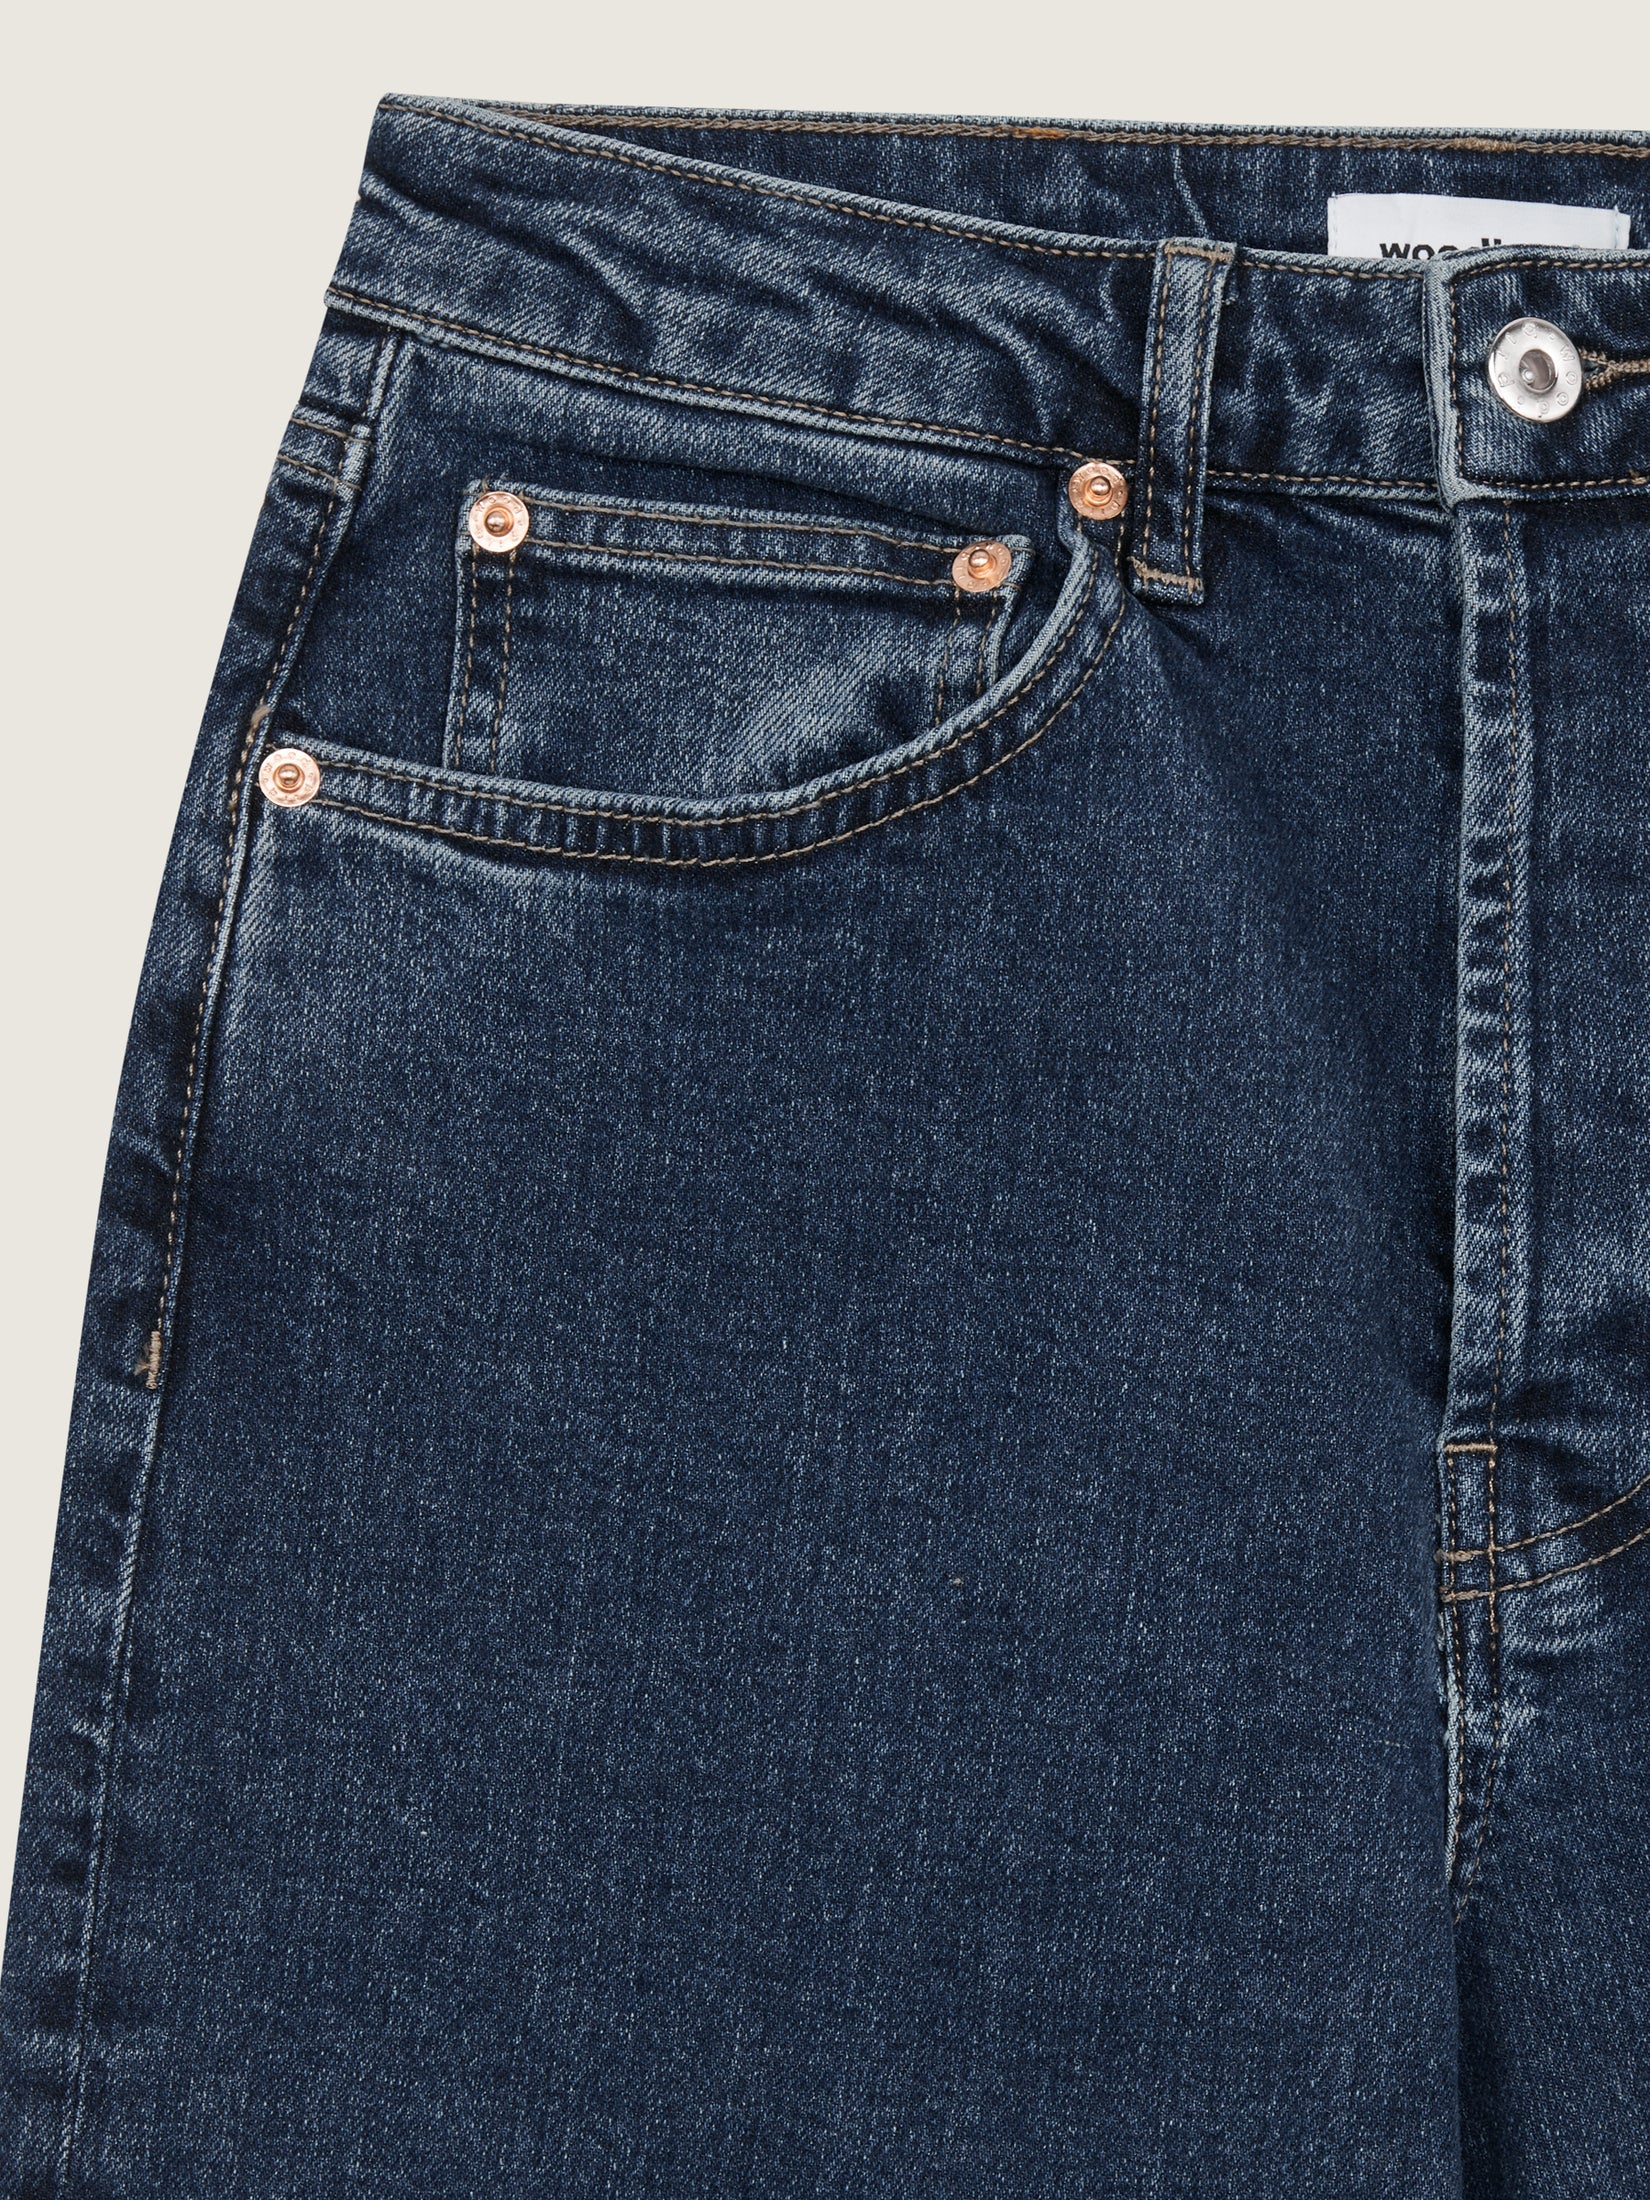 WBMaria Ash Grey Jeans - Grey